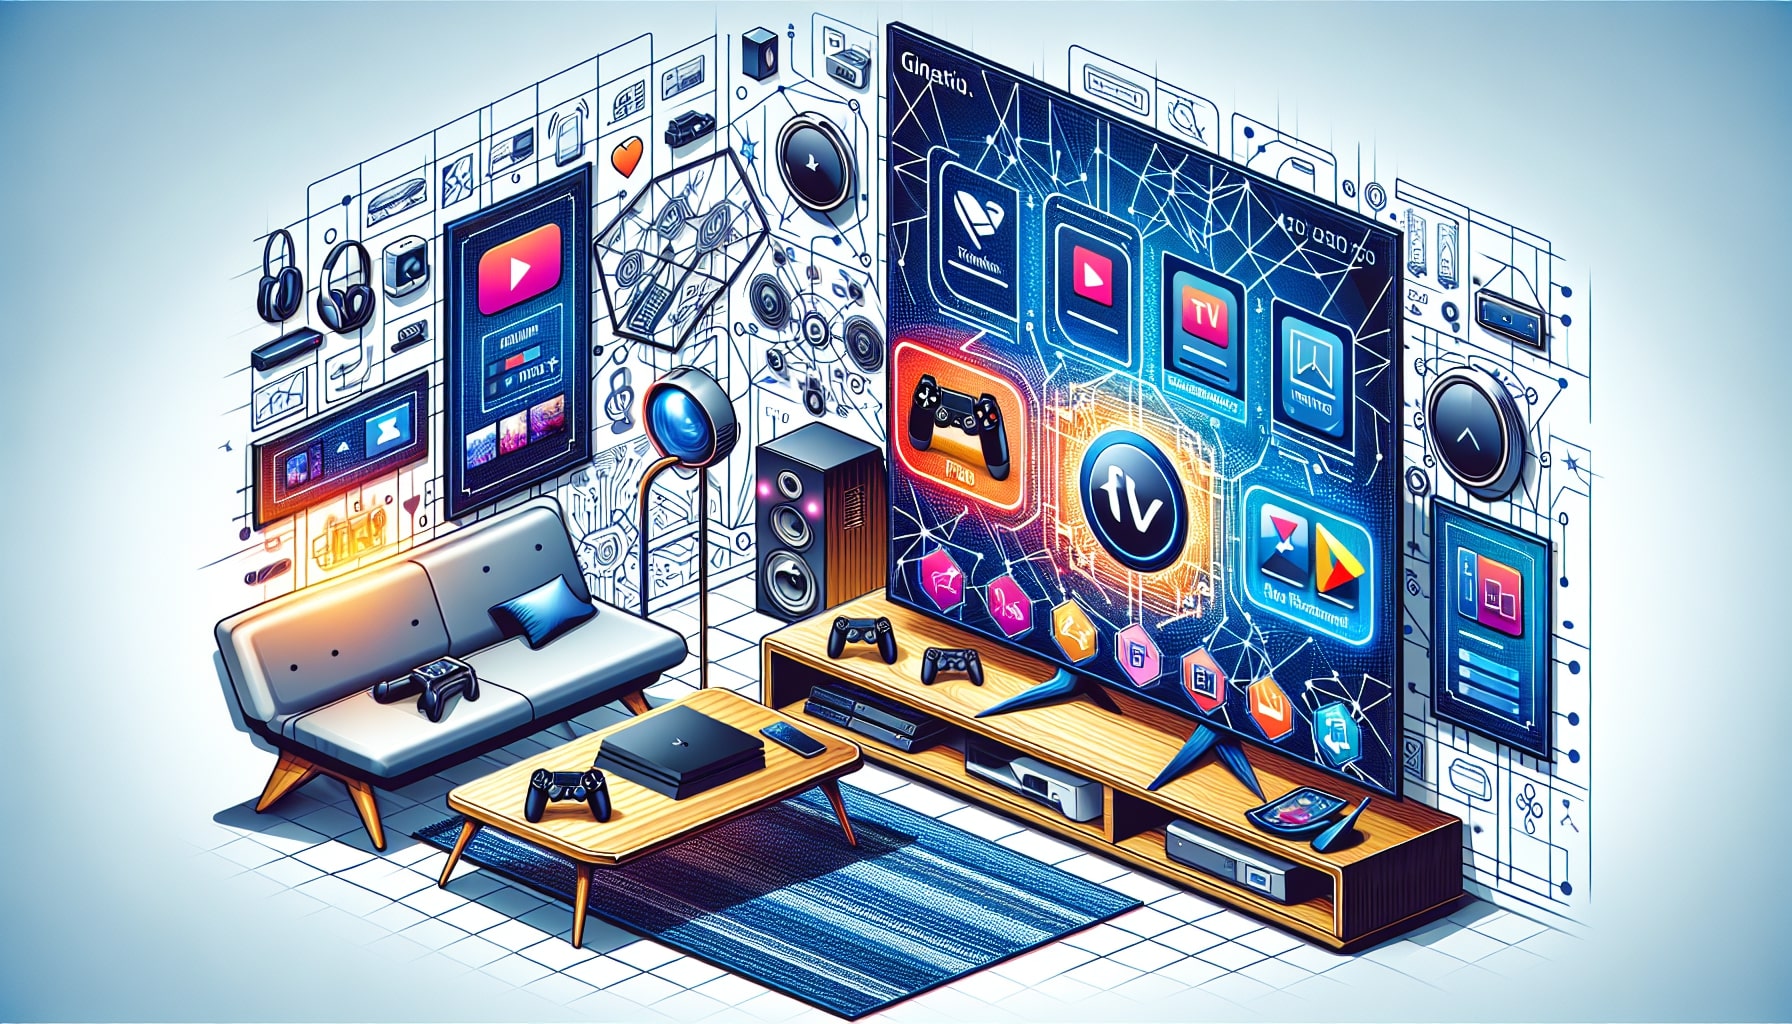 Futuristic multimedia entertainment room concept illustration.